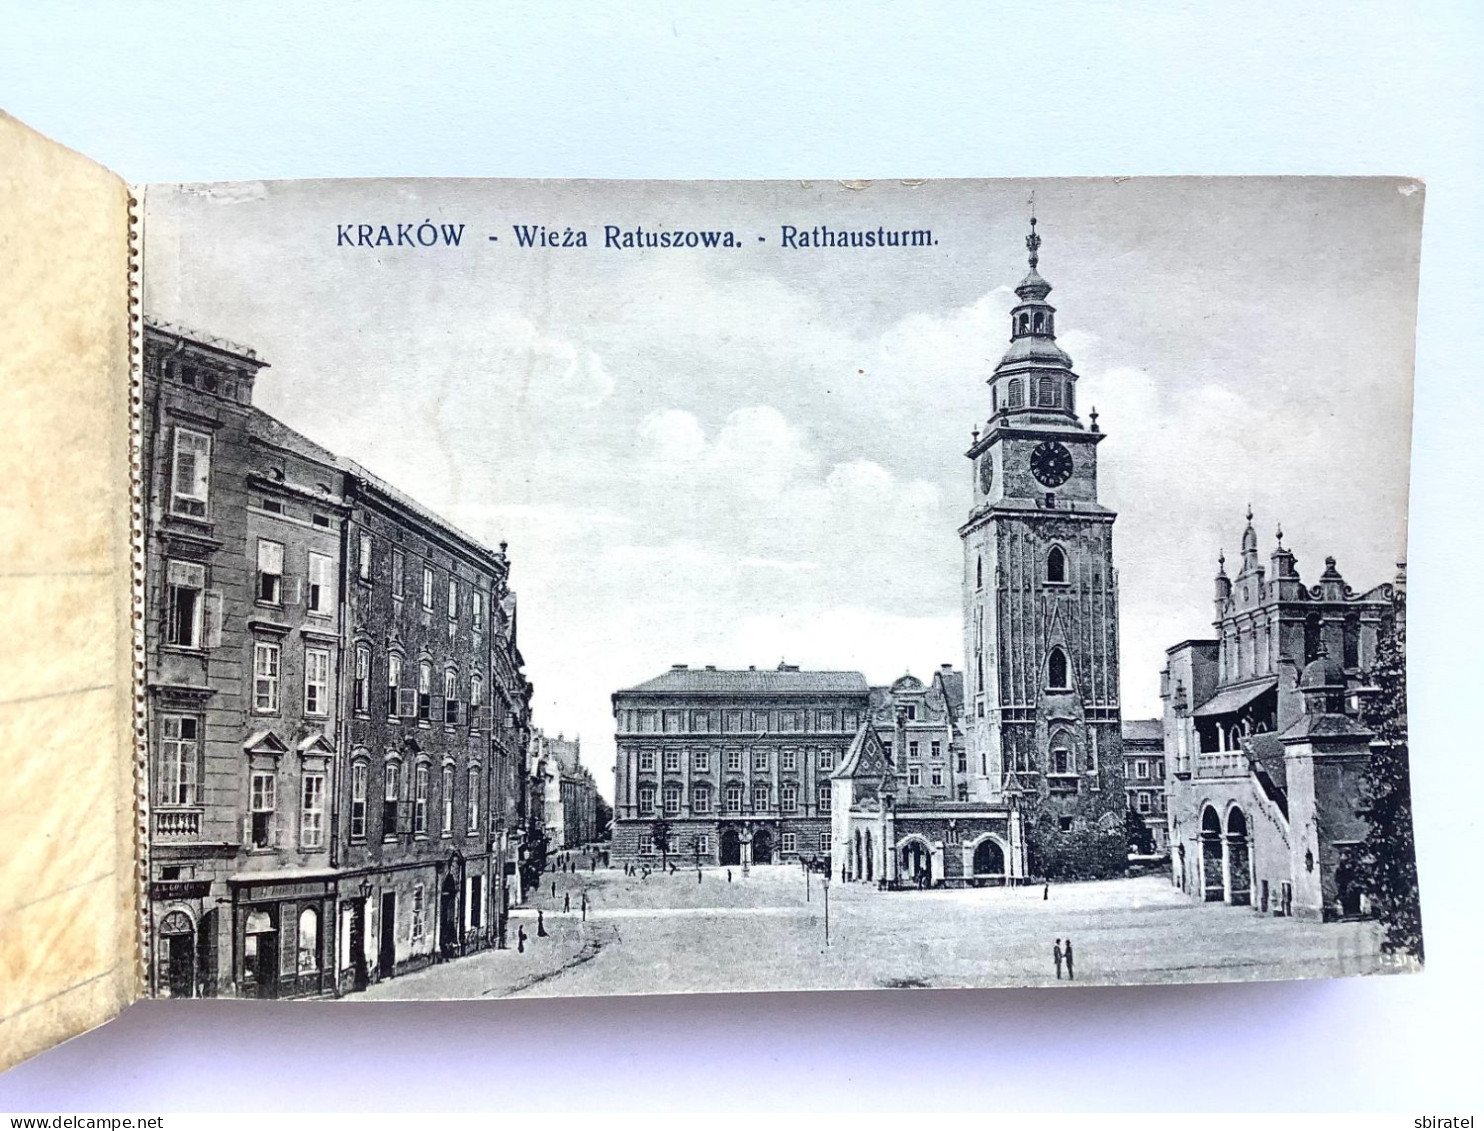 10 cards Krakow in album